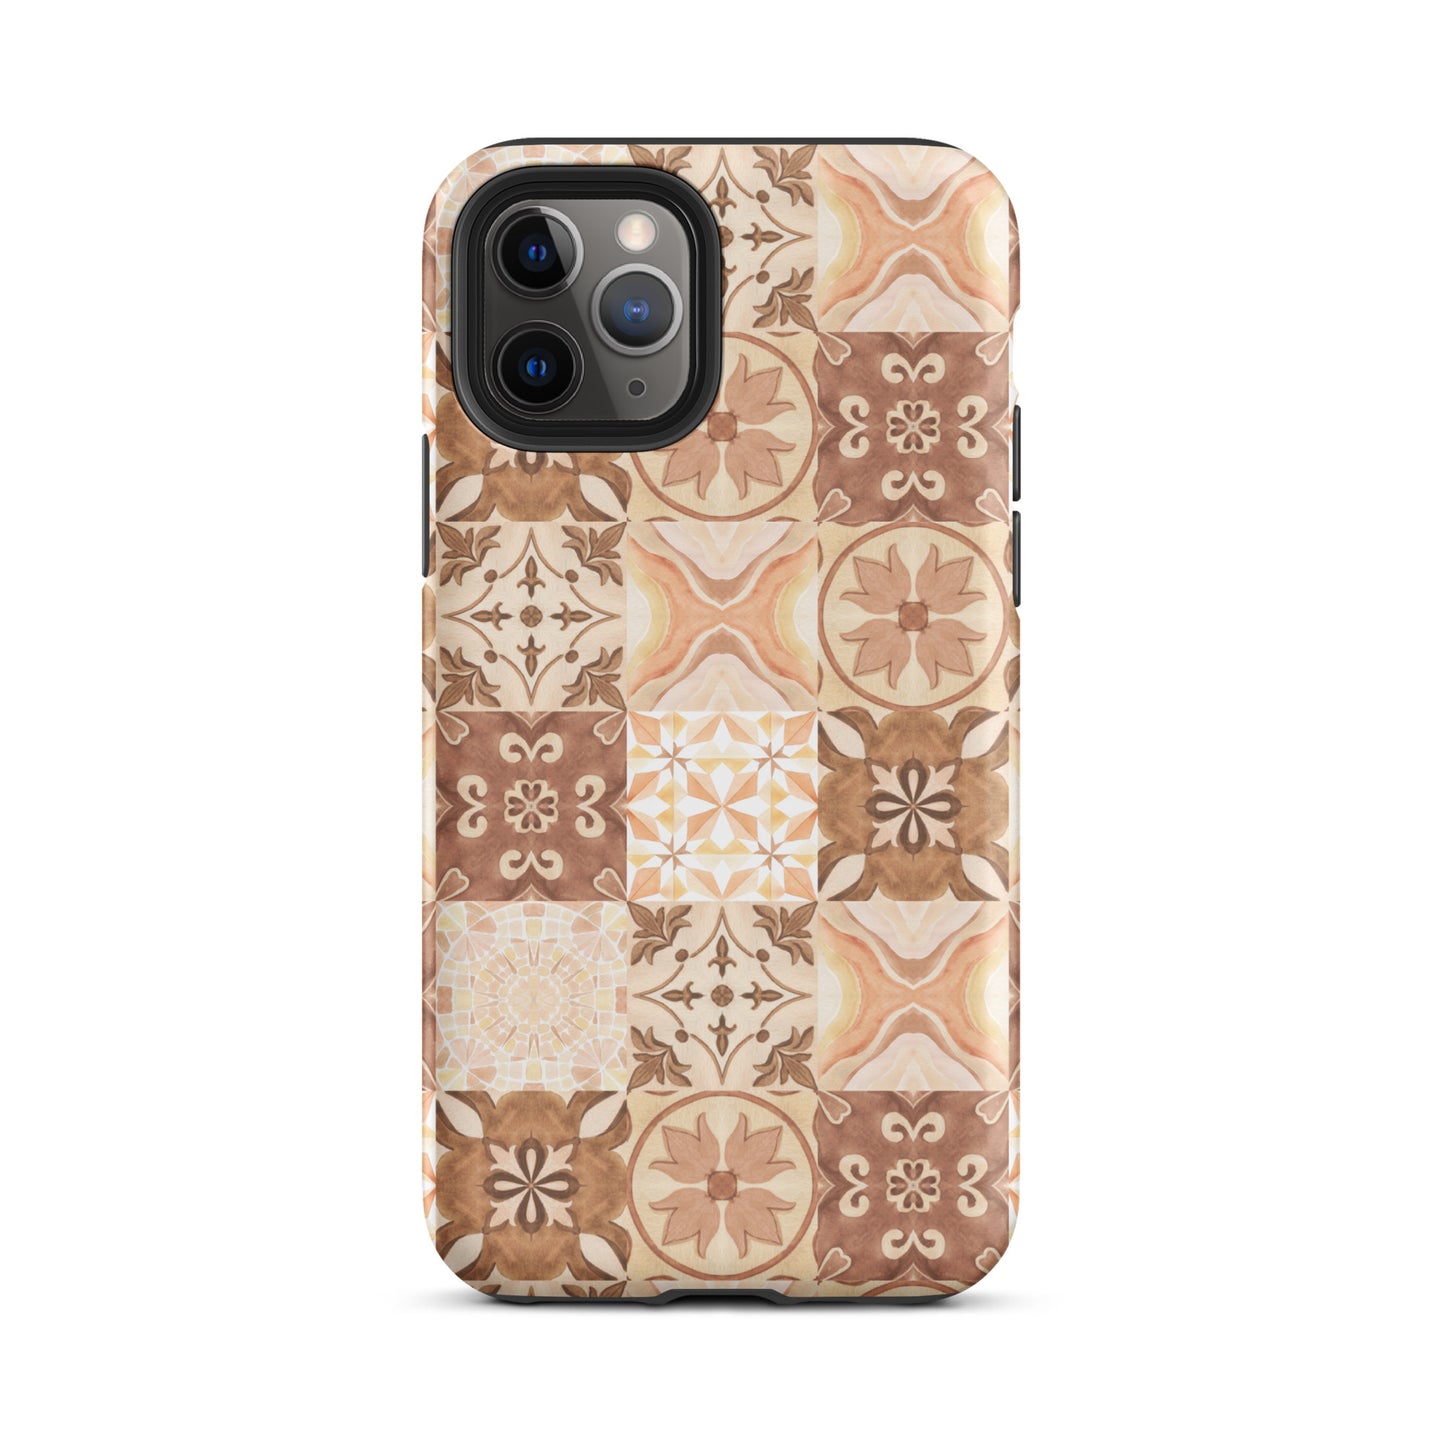 Moroccan Desert Tile Tough iPhone® Case